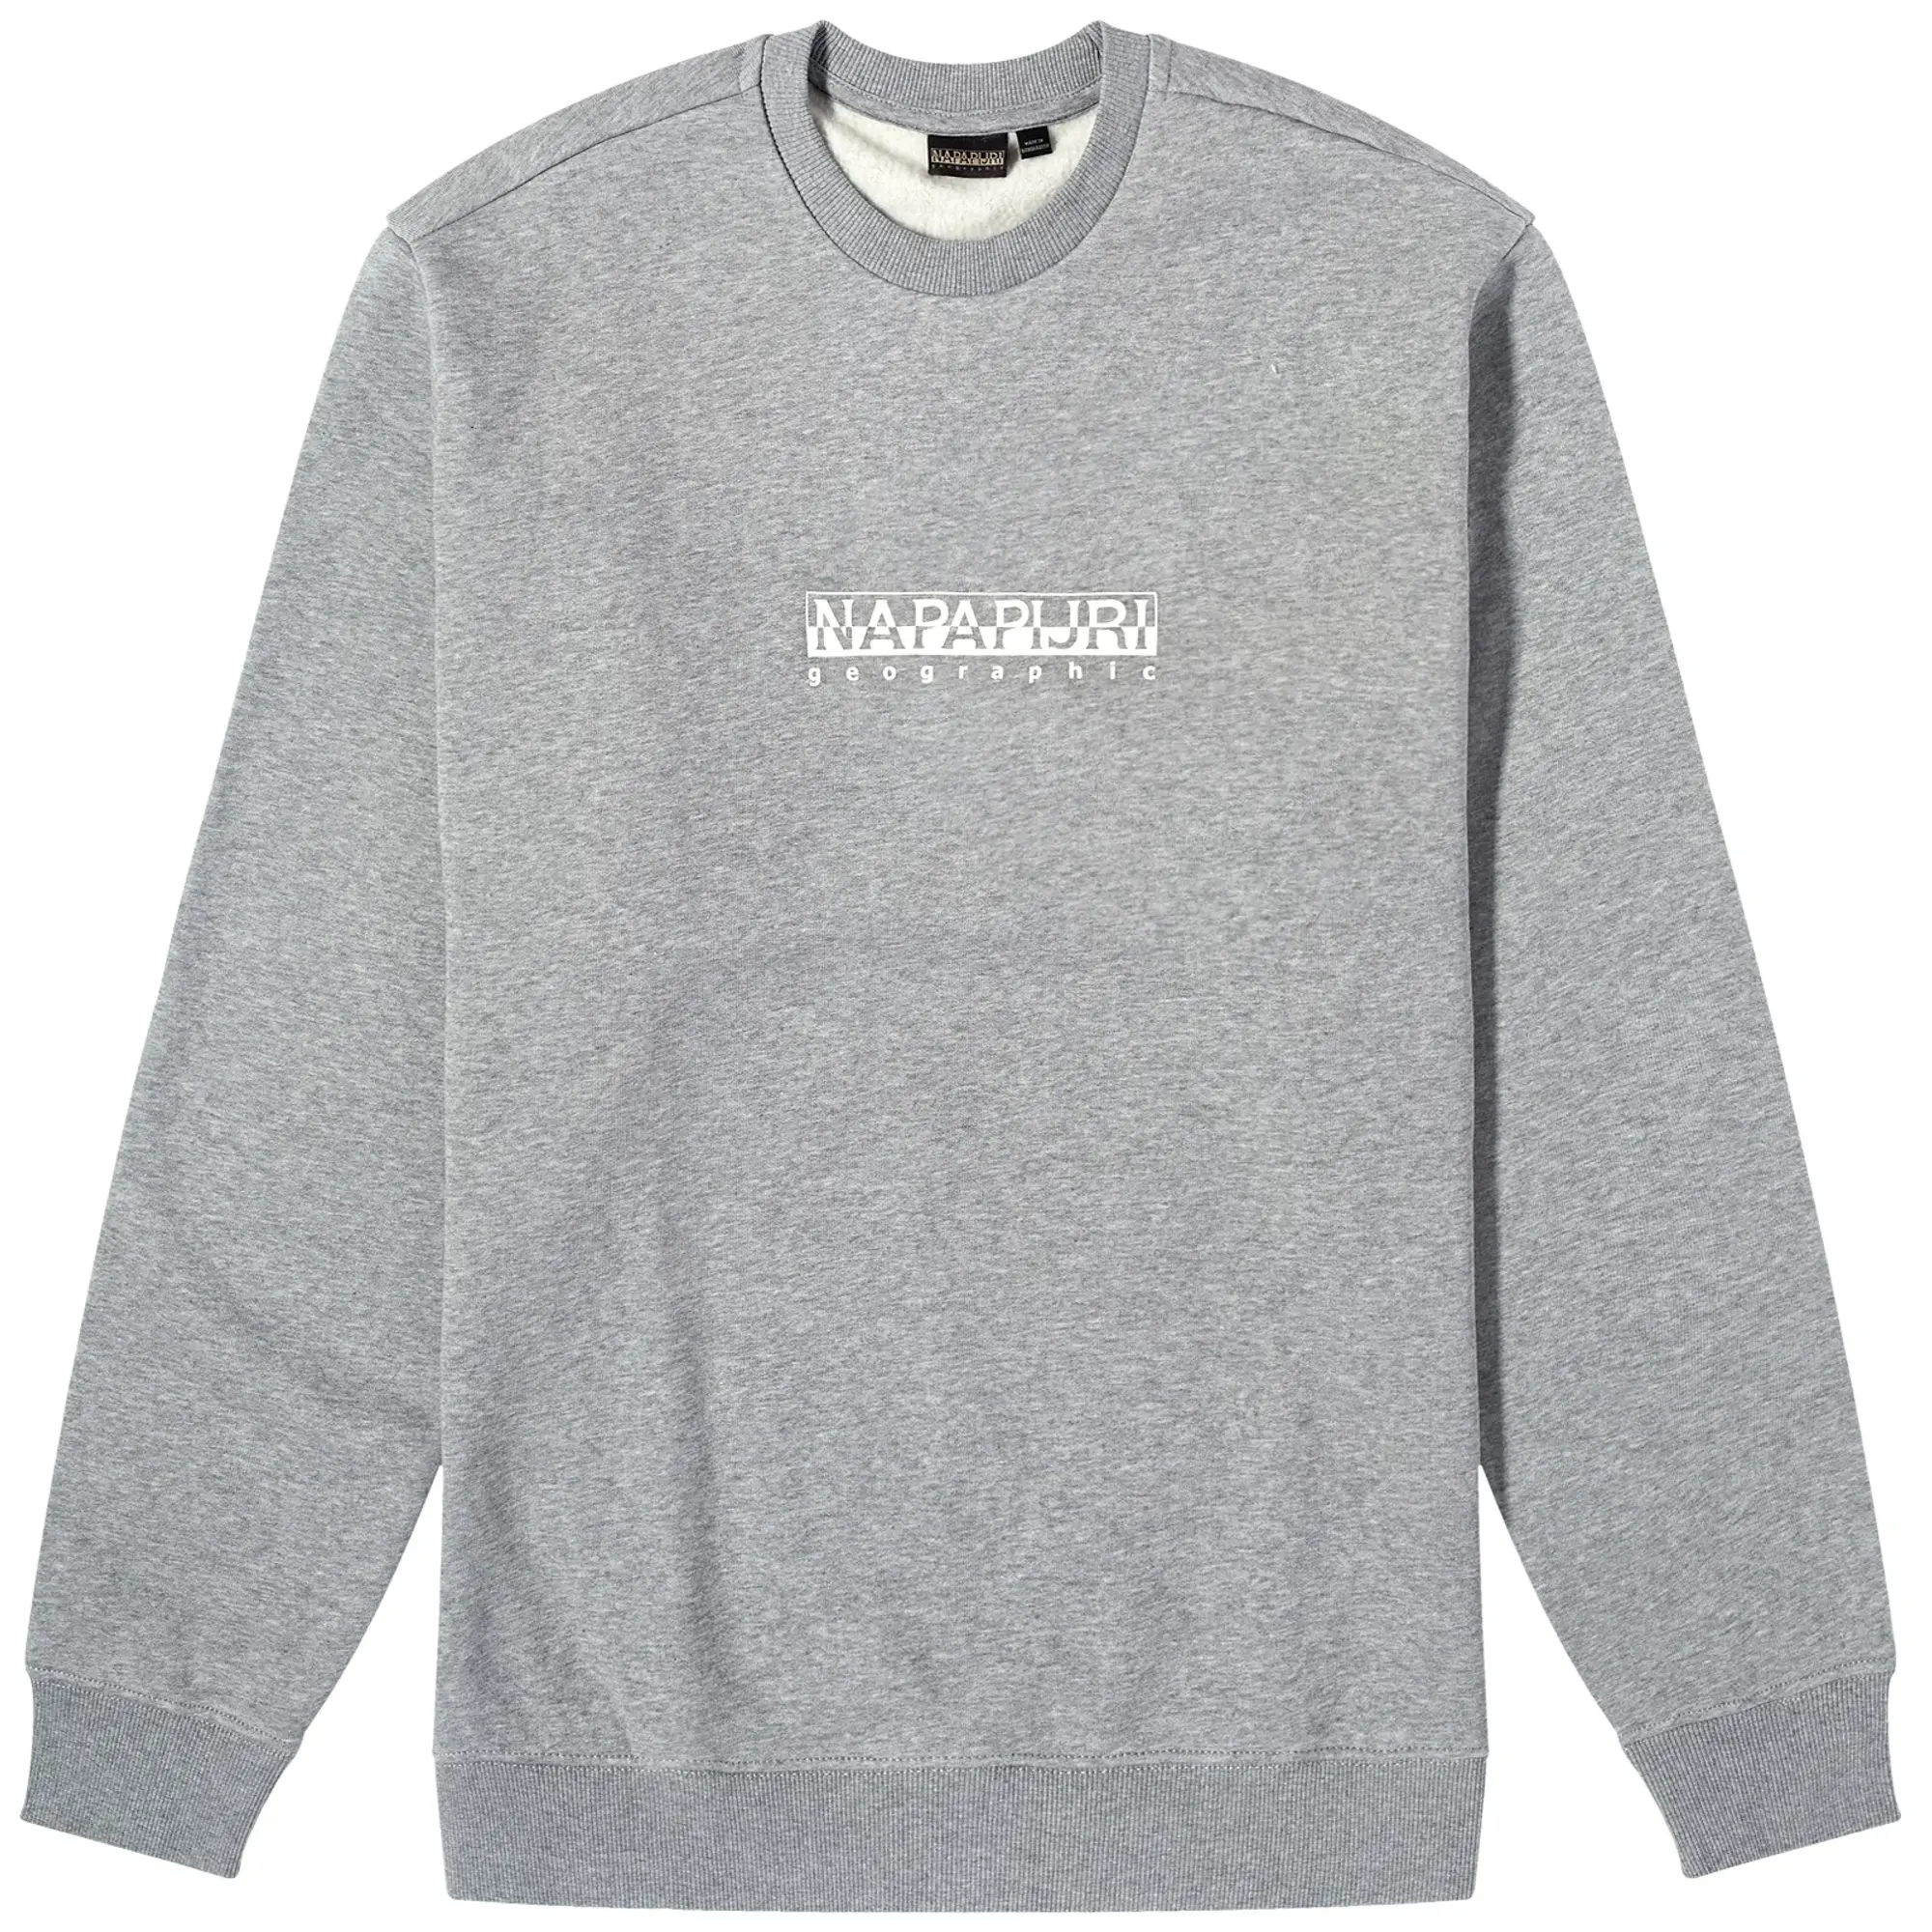 Napapijri B-box C S 1 Sweatshirt  - Grey